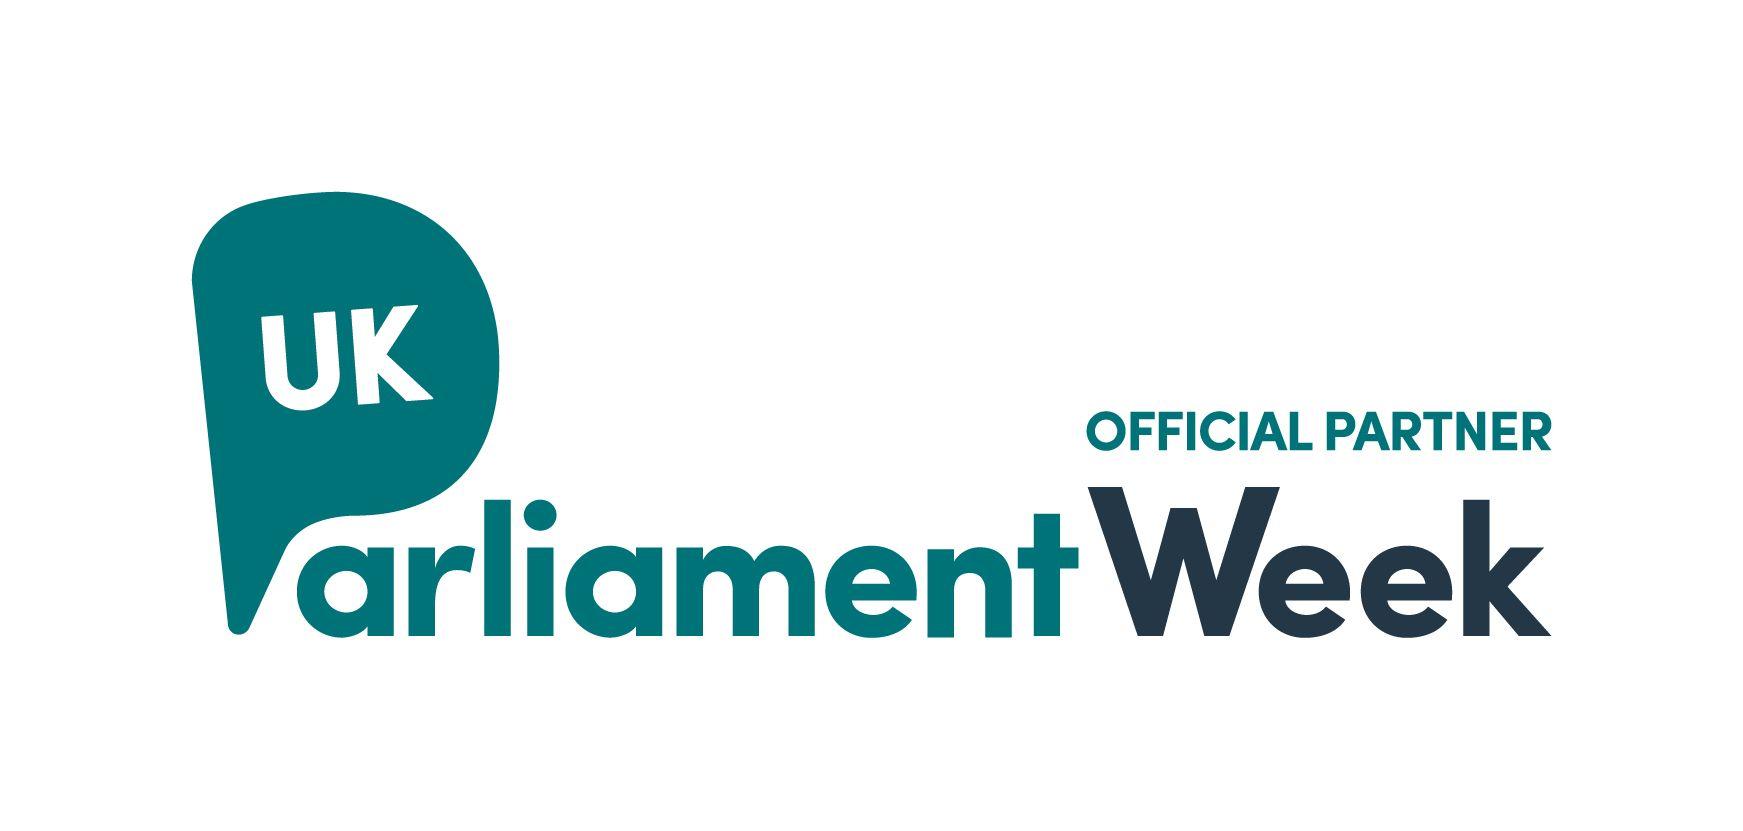 Parliament Logo - Logos and templates. UK Parliament Week